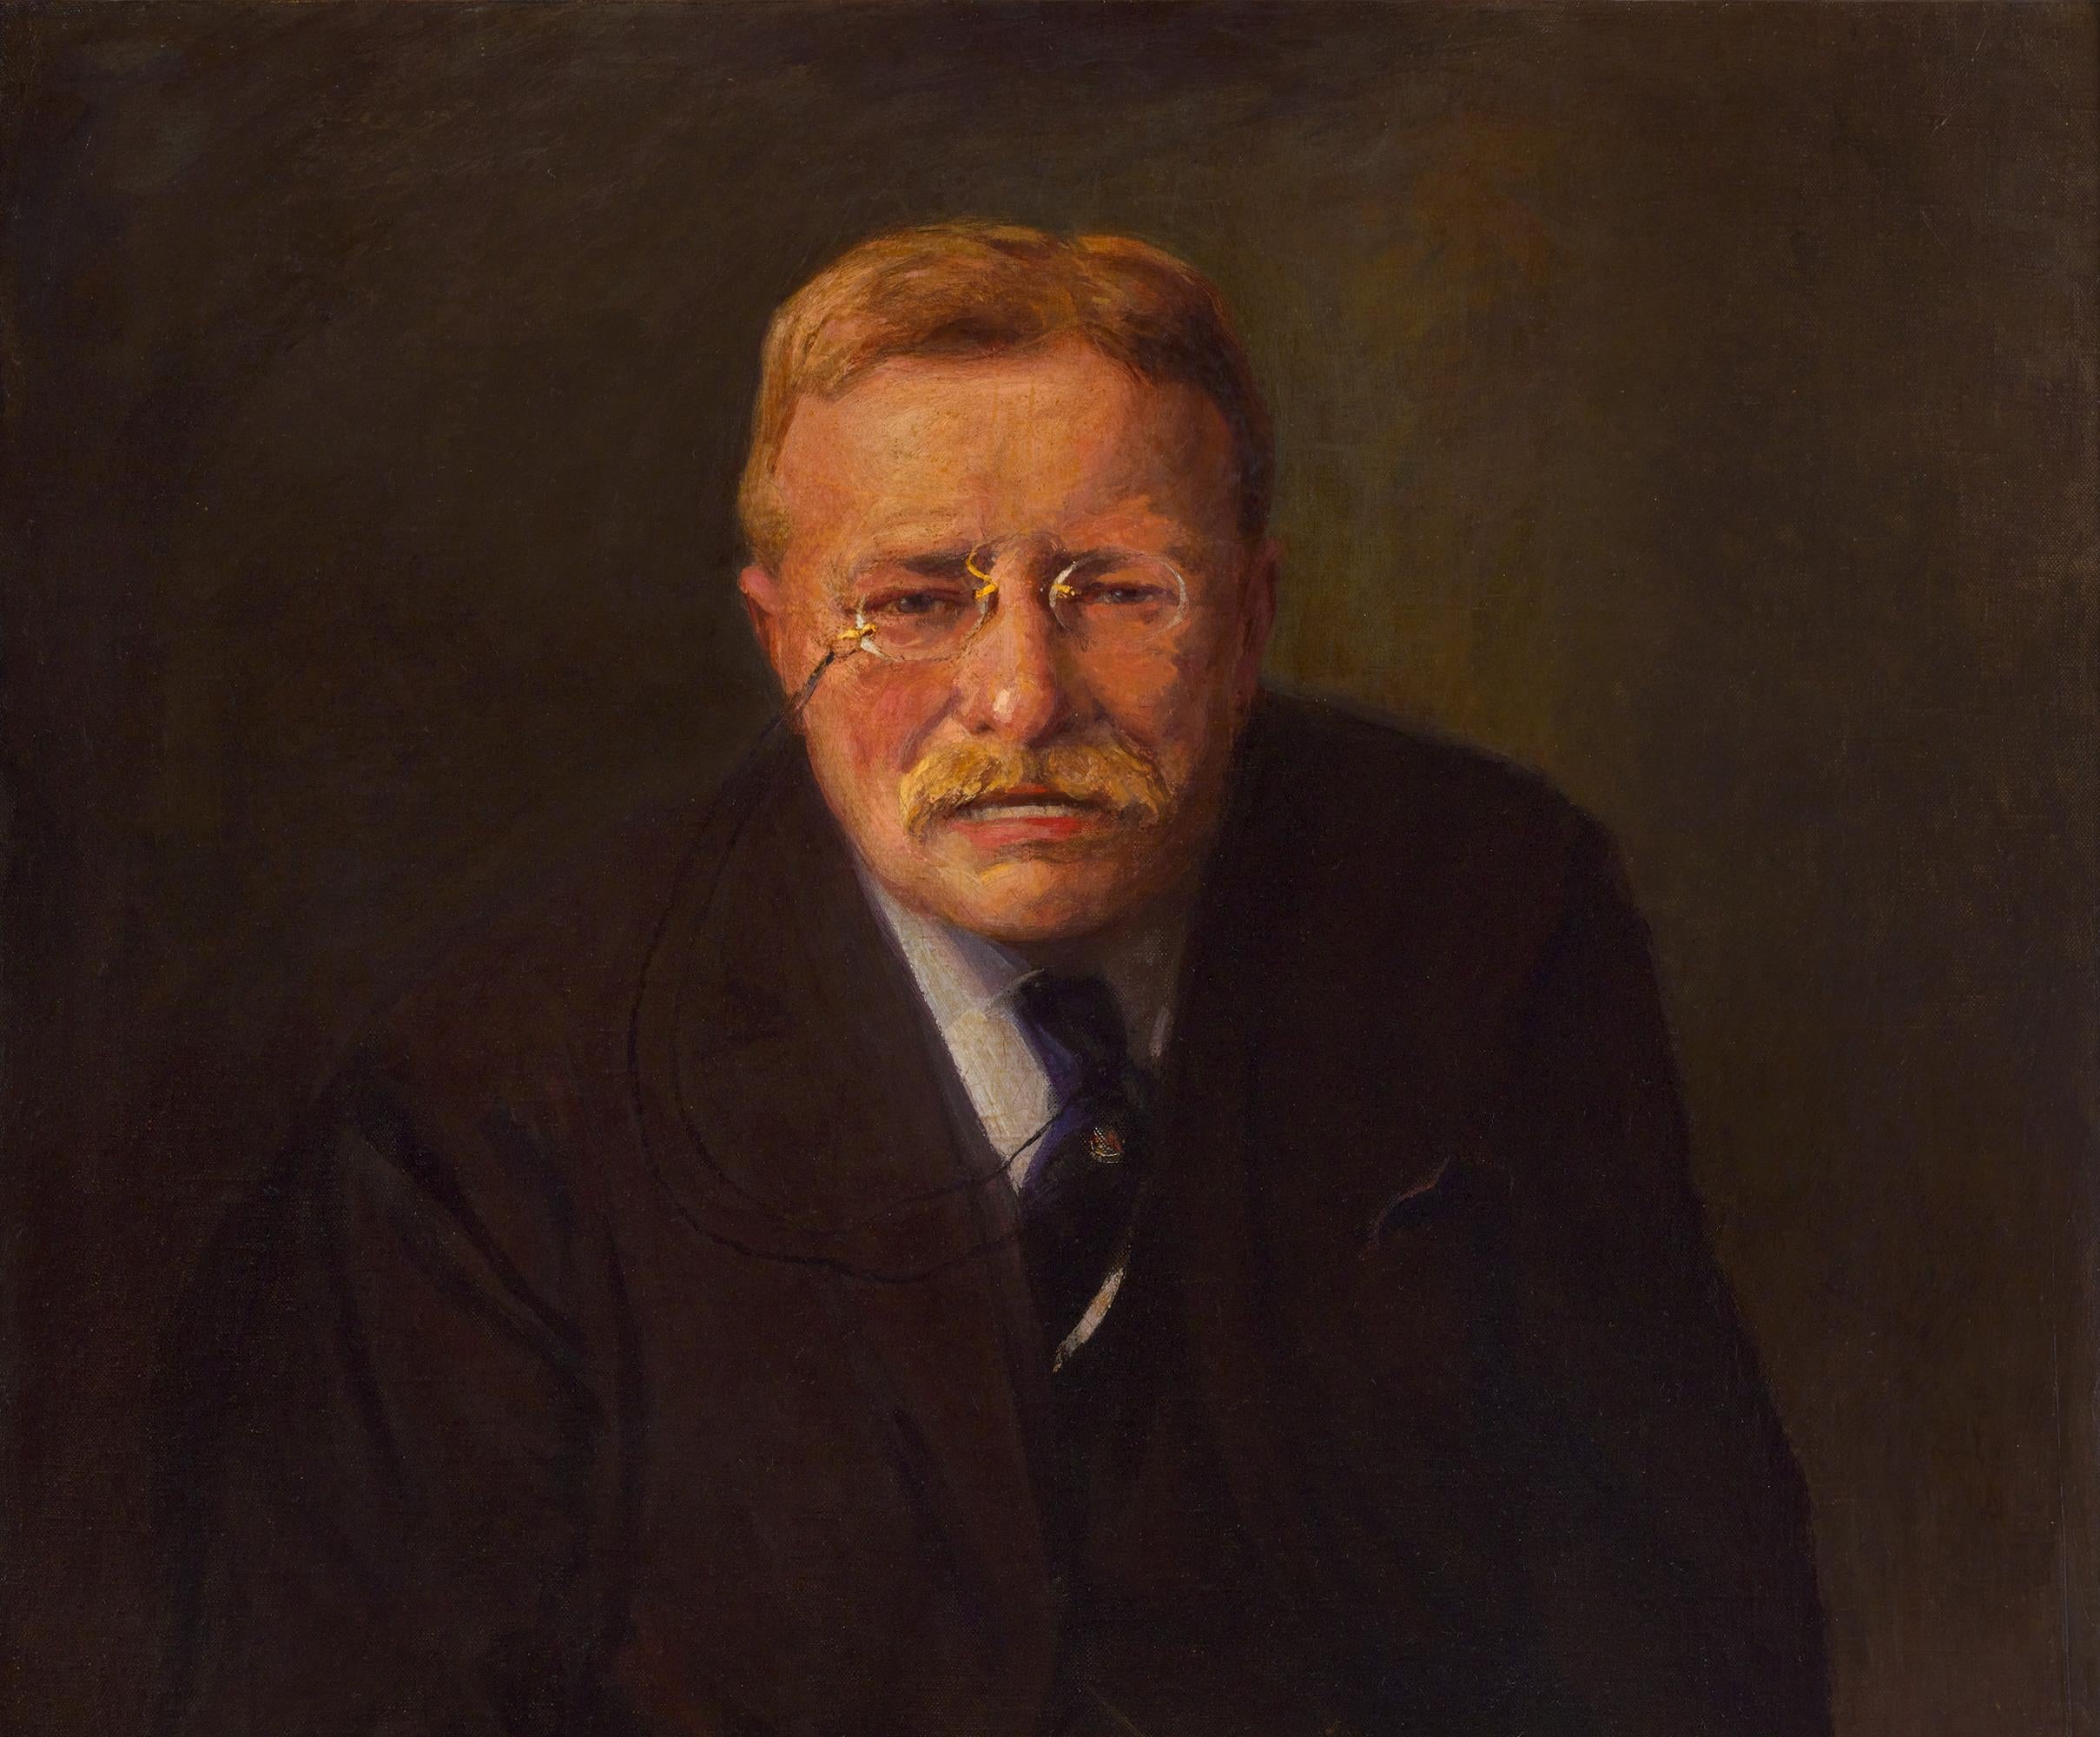 Porträt von Theodore Roosevelt von Joseph A. Imhof (Akademisch), Painting, von Joseph Adam Imhof